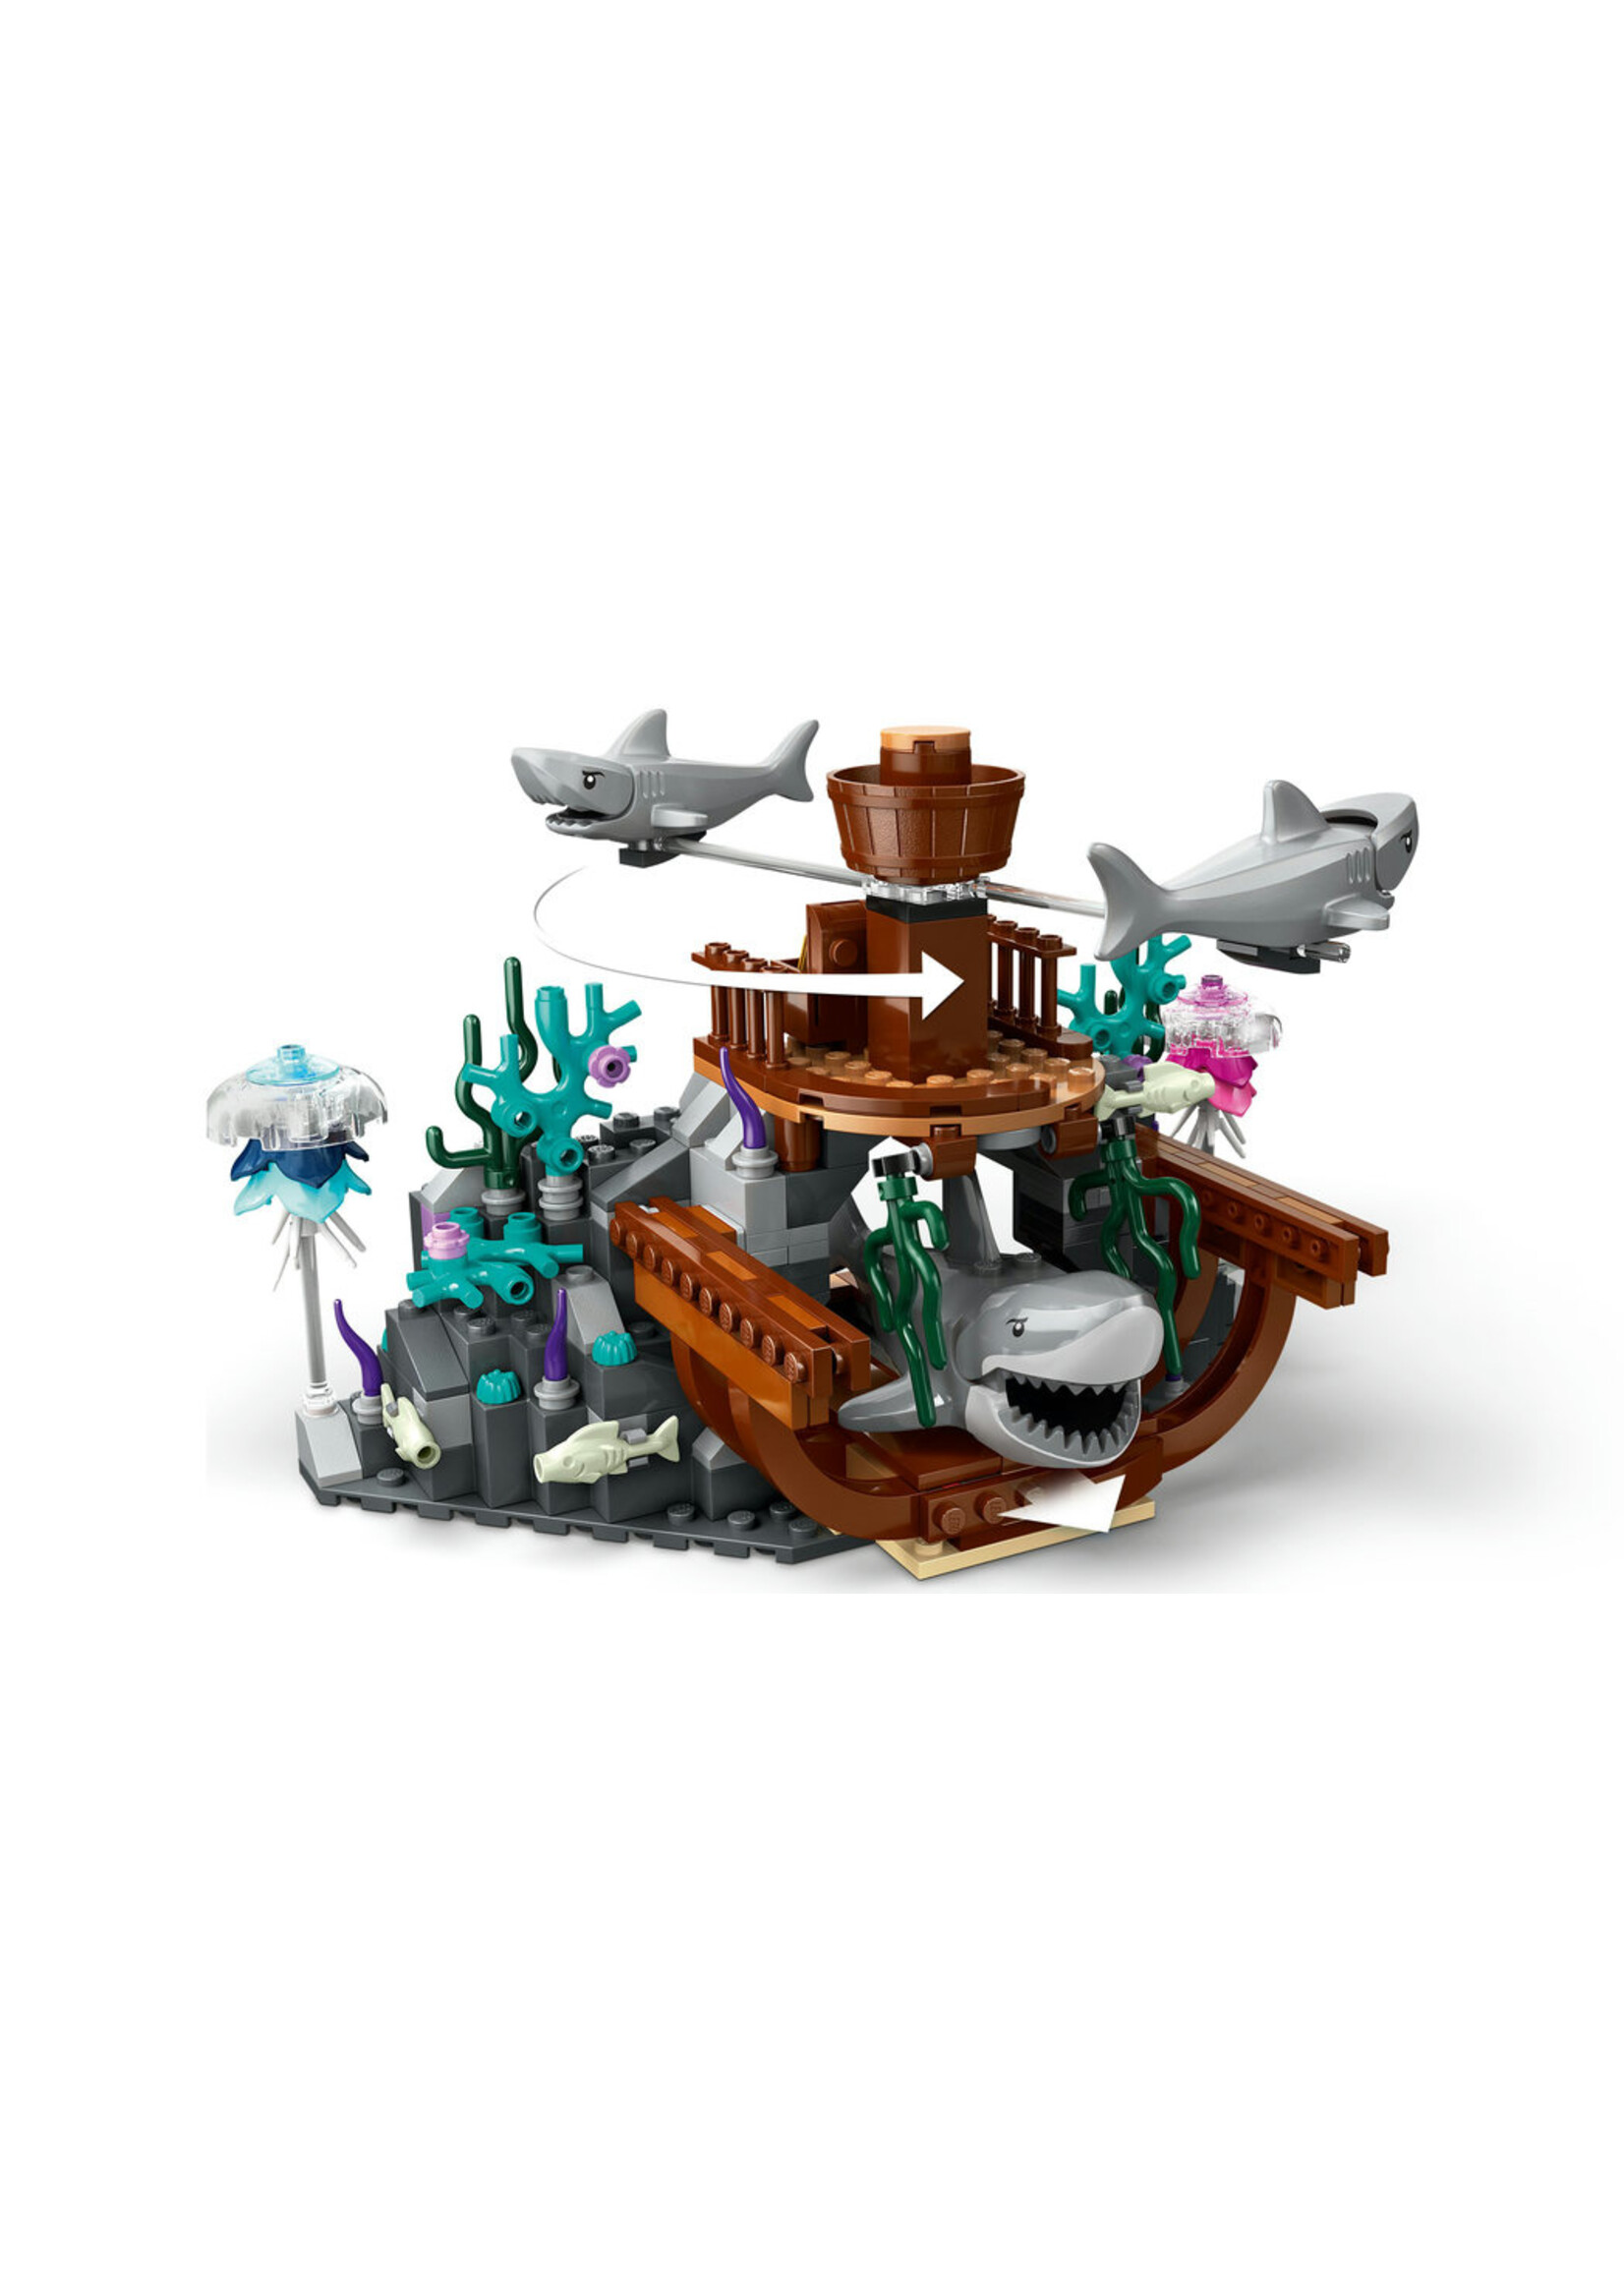 LEGO® City 60379 Deep-Sea Explorer Submarine